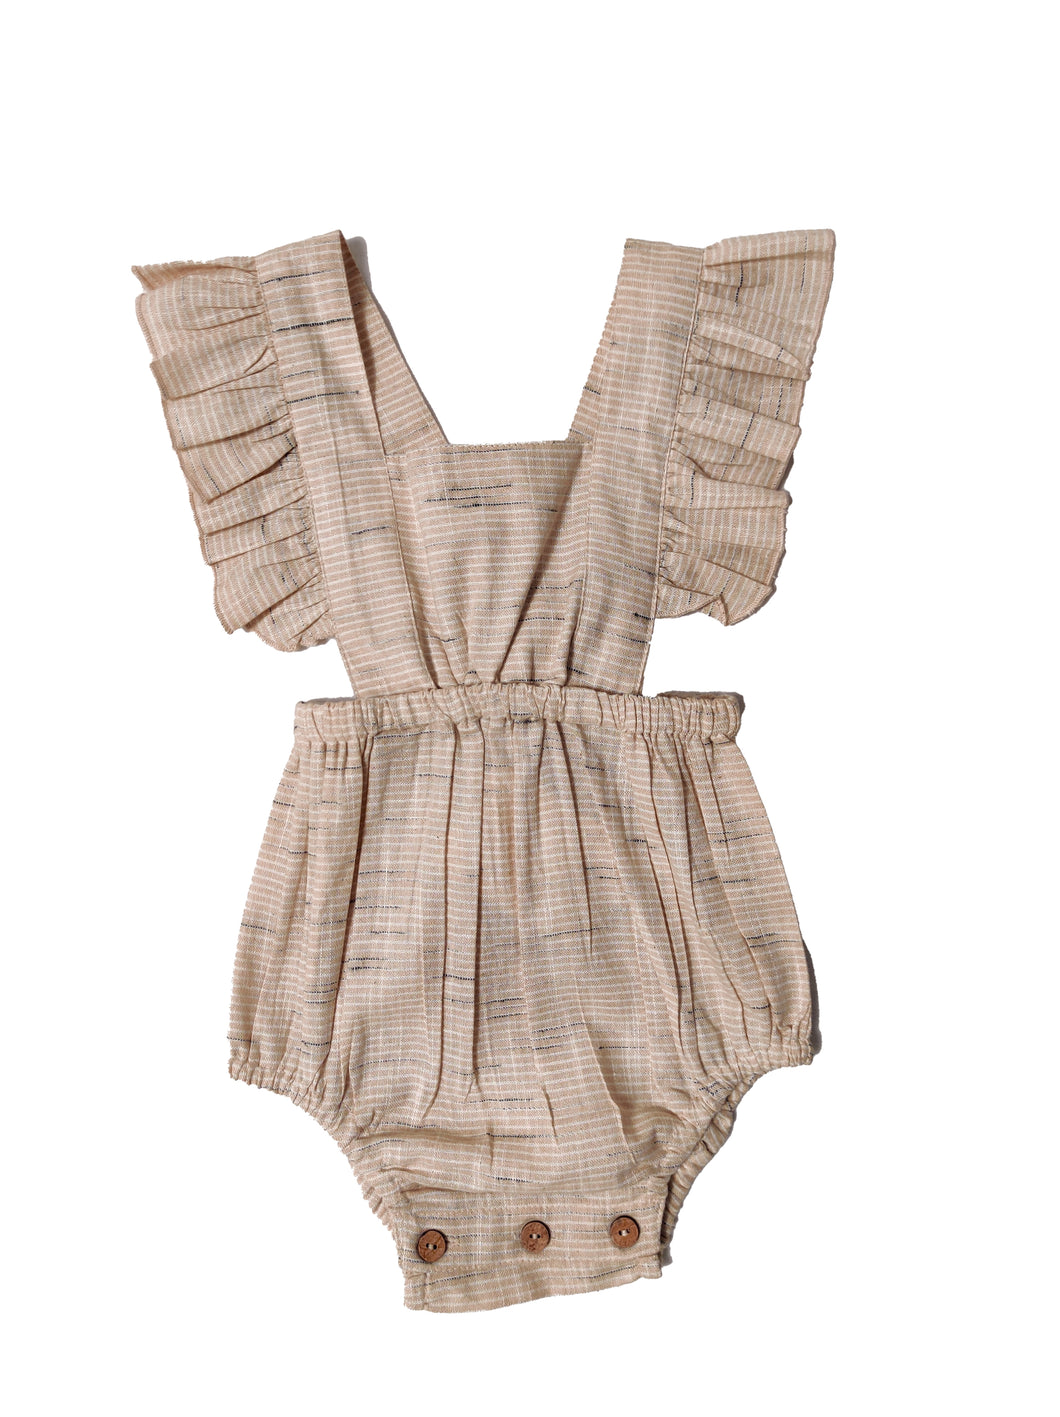 Beige Striped Self Weaving Infant Racerback Romper (YB1933)